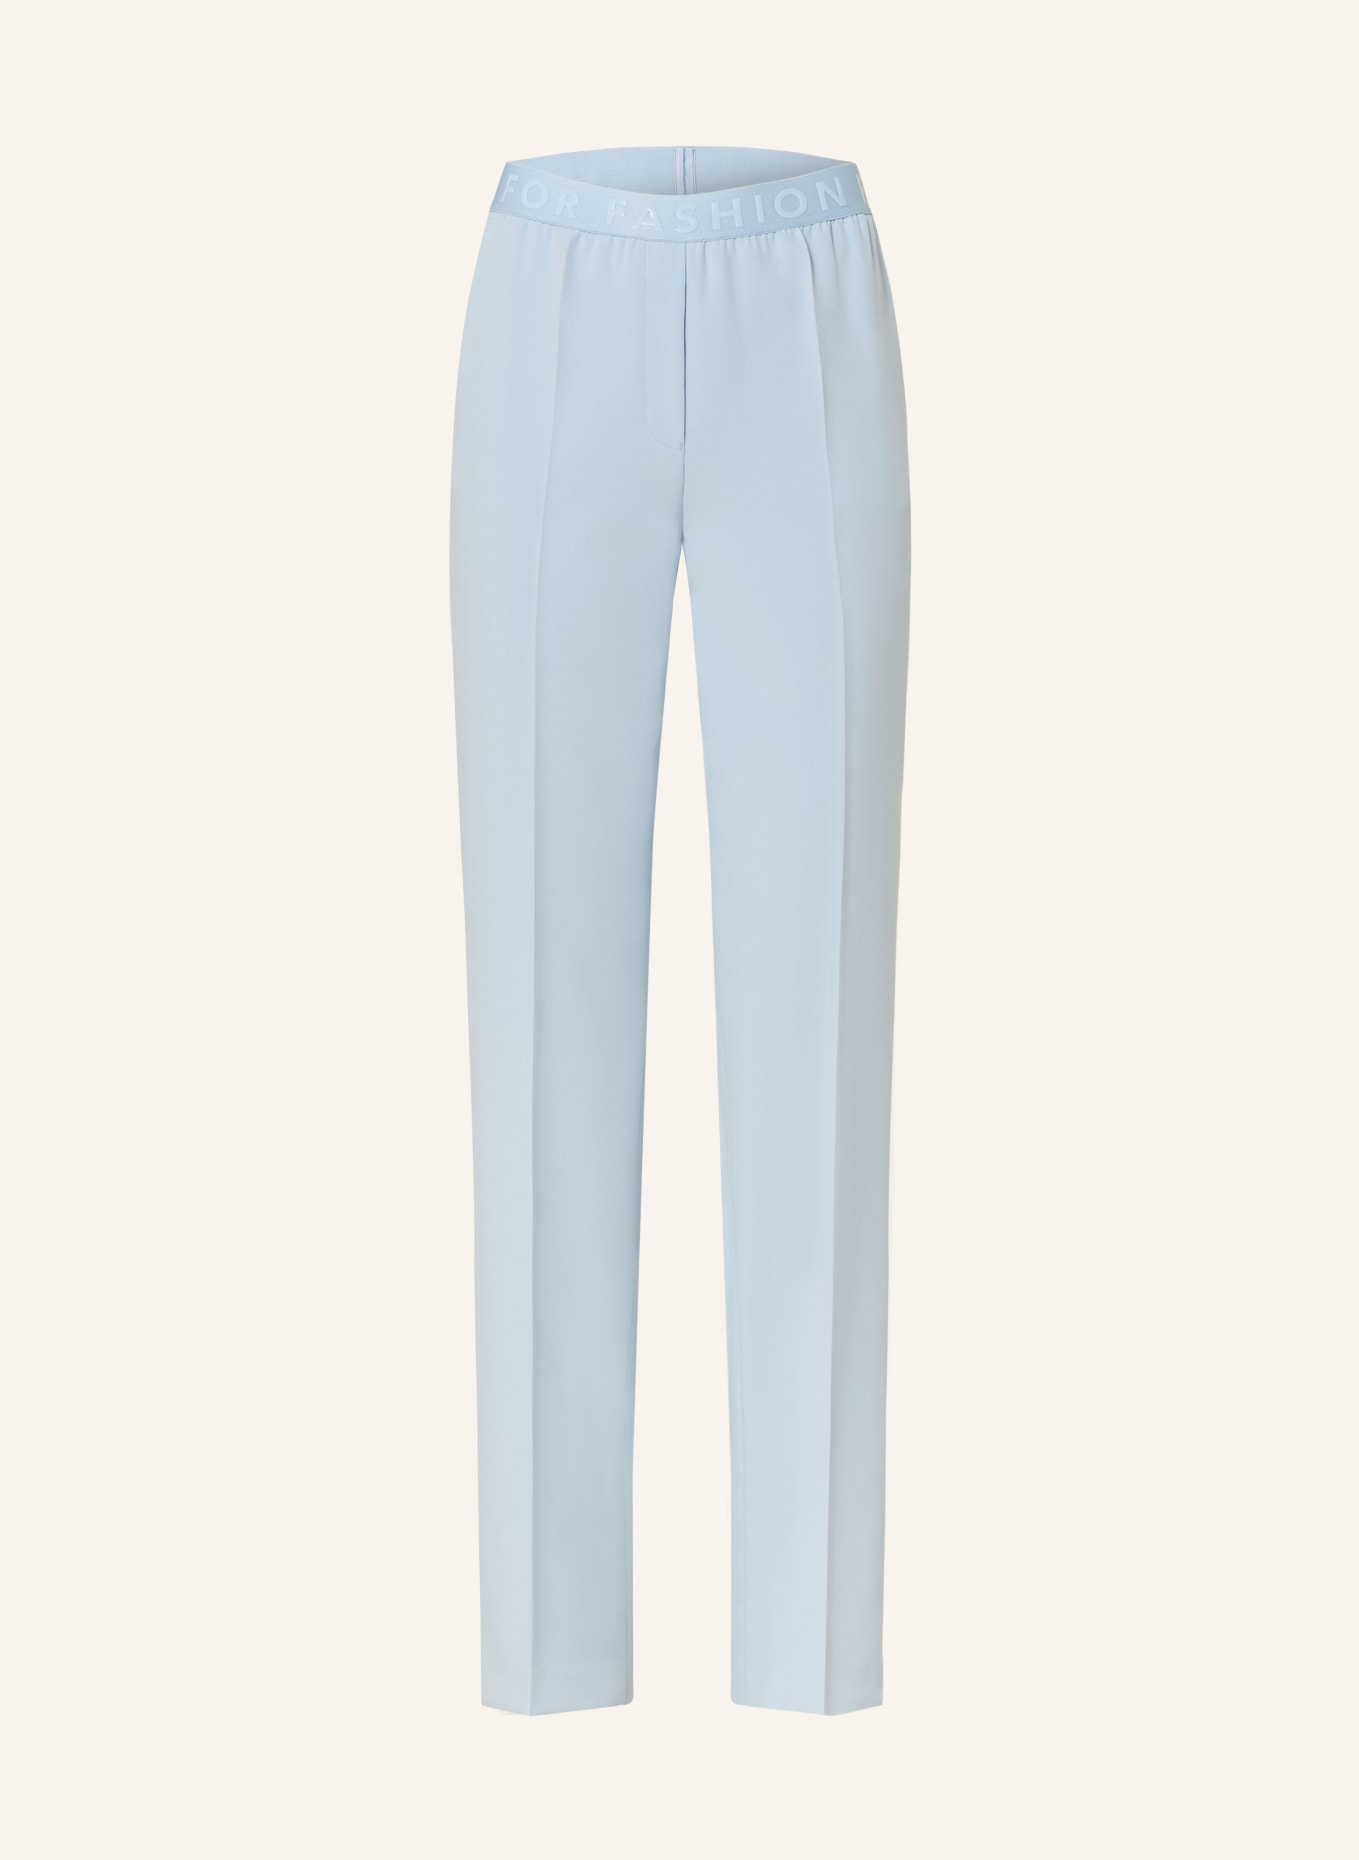 MARC AUREL Trousers, Color: LIGHT BLUE (Image 1)